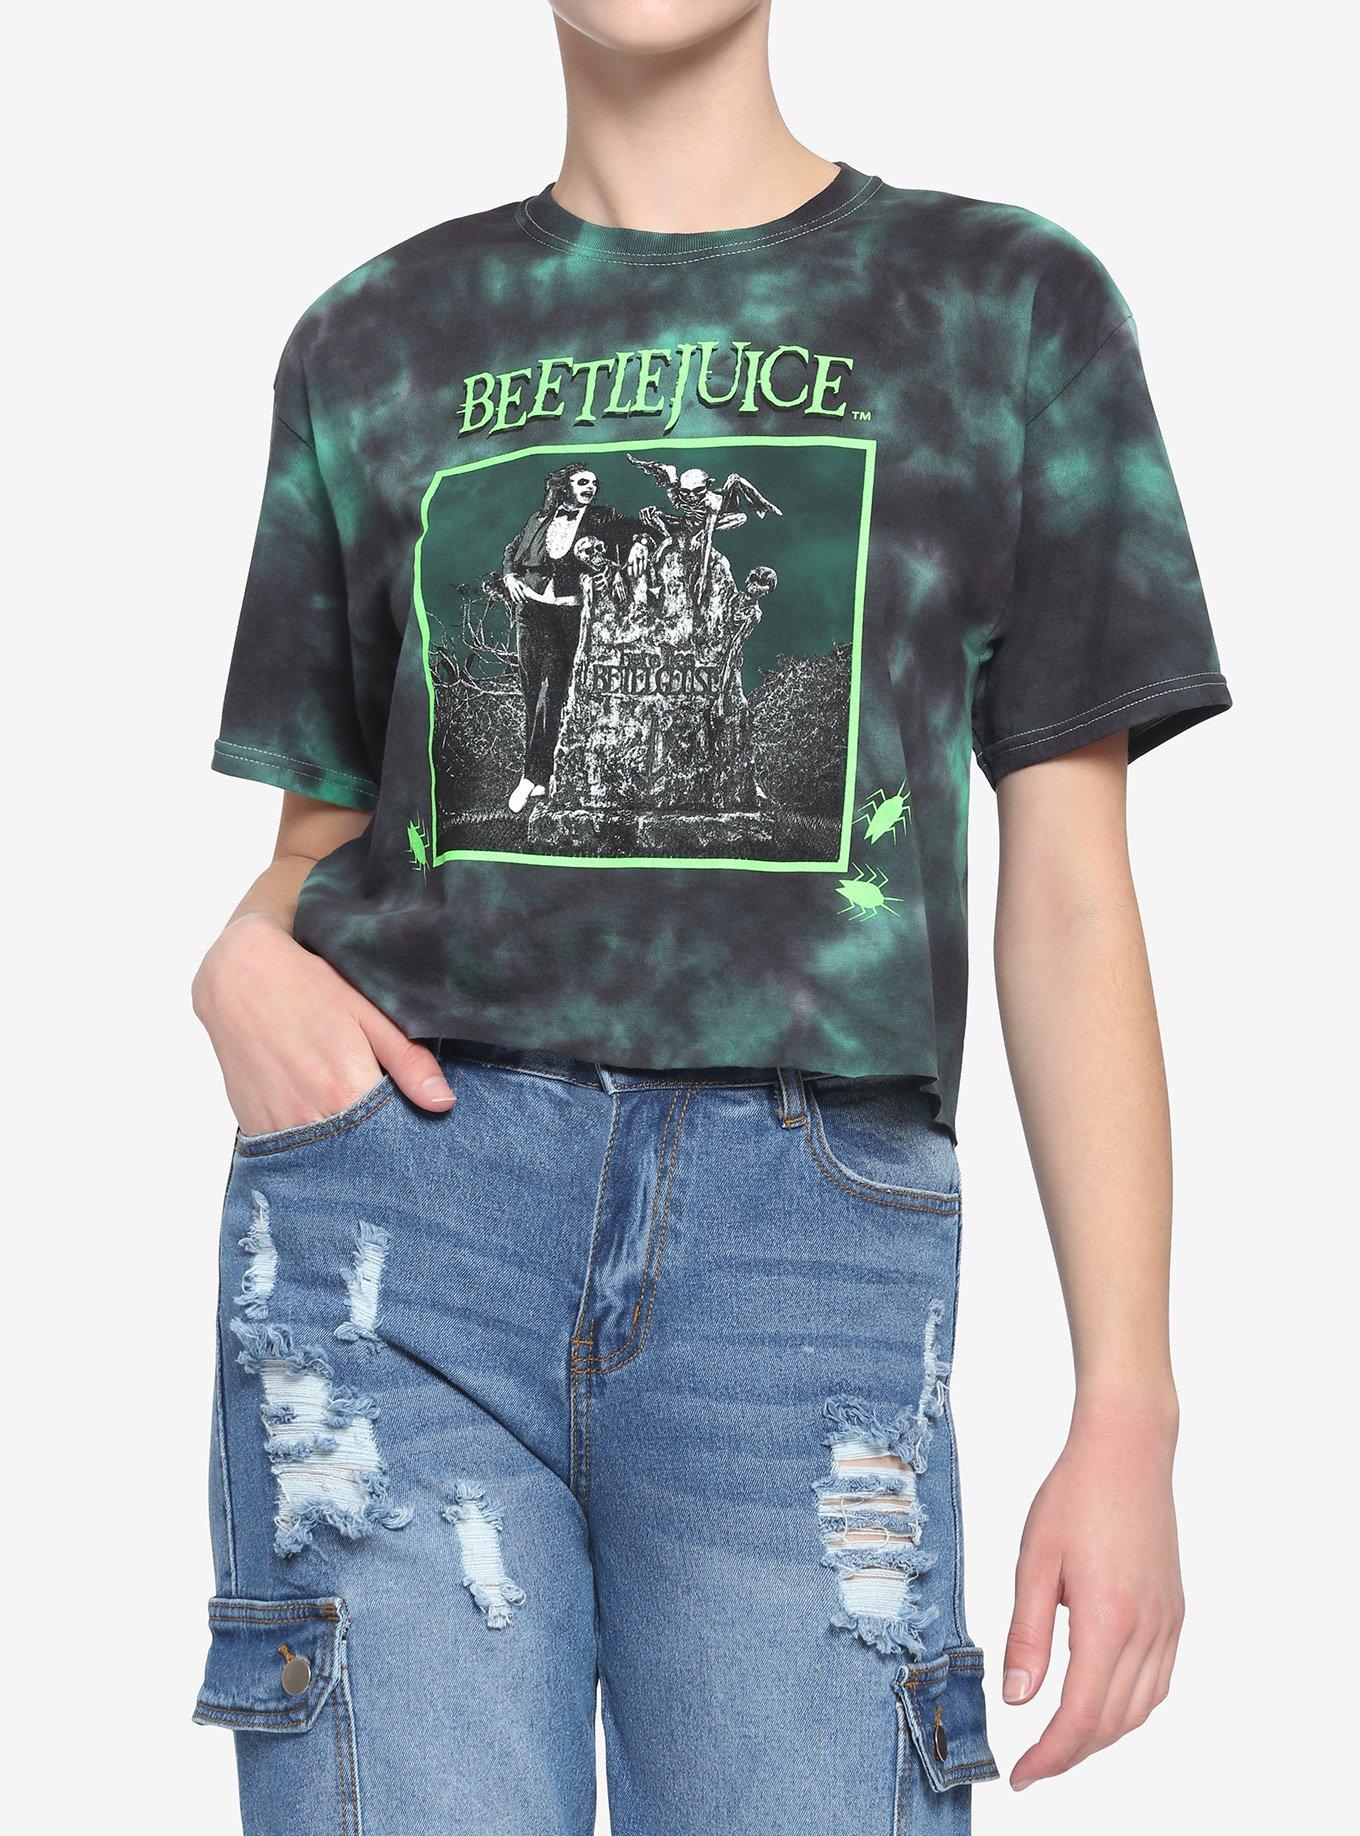 Beetlejuice Tombstone Tie-Dye Crop Girls T-Shirt, MULTI, hi-res